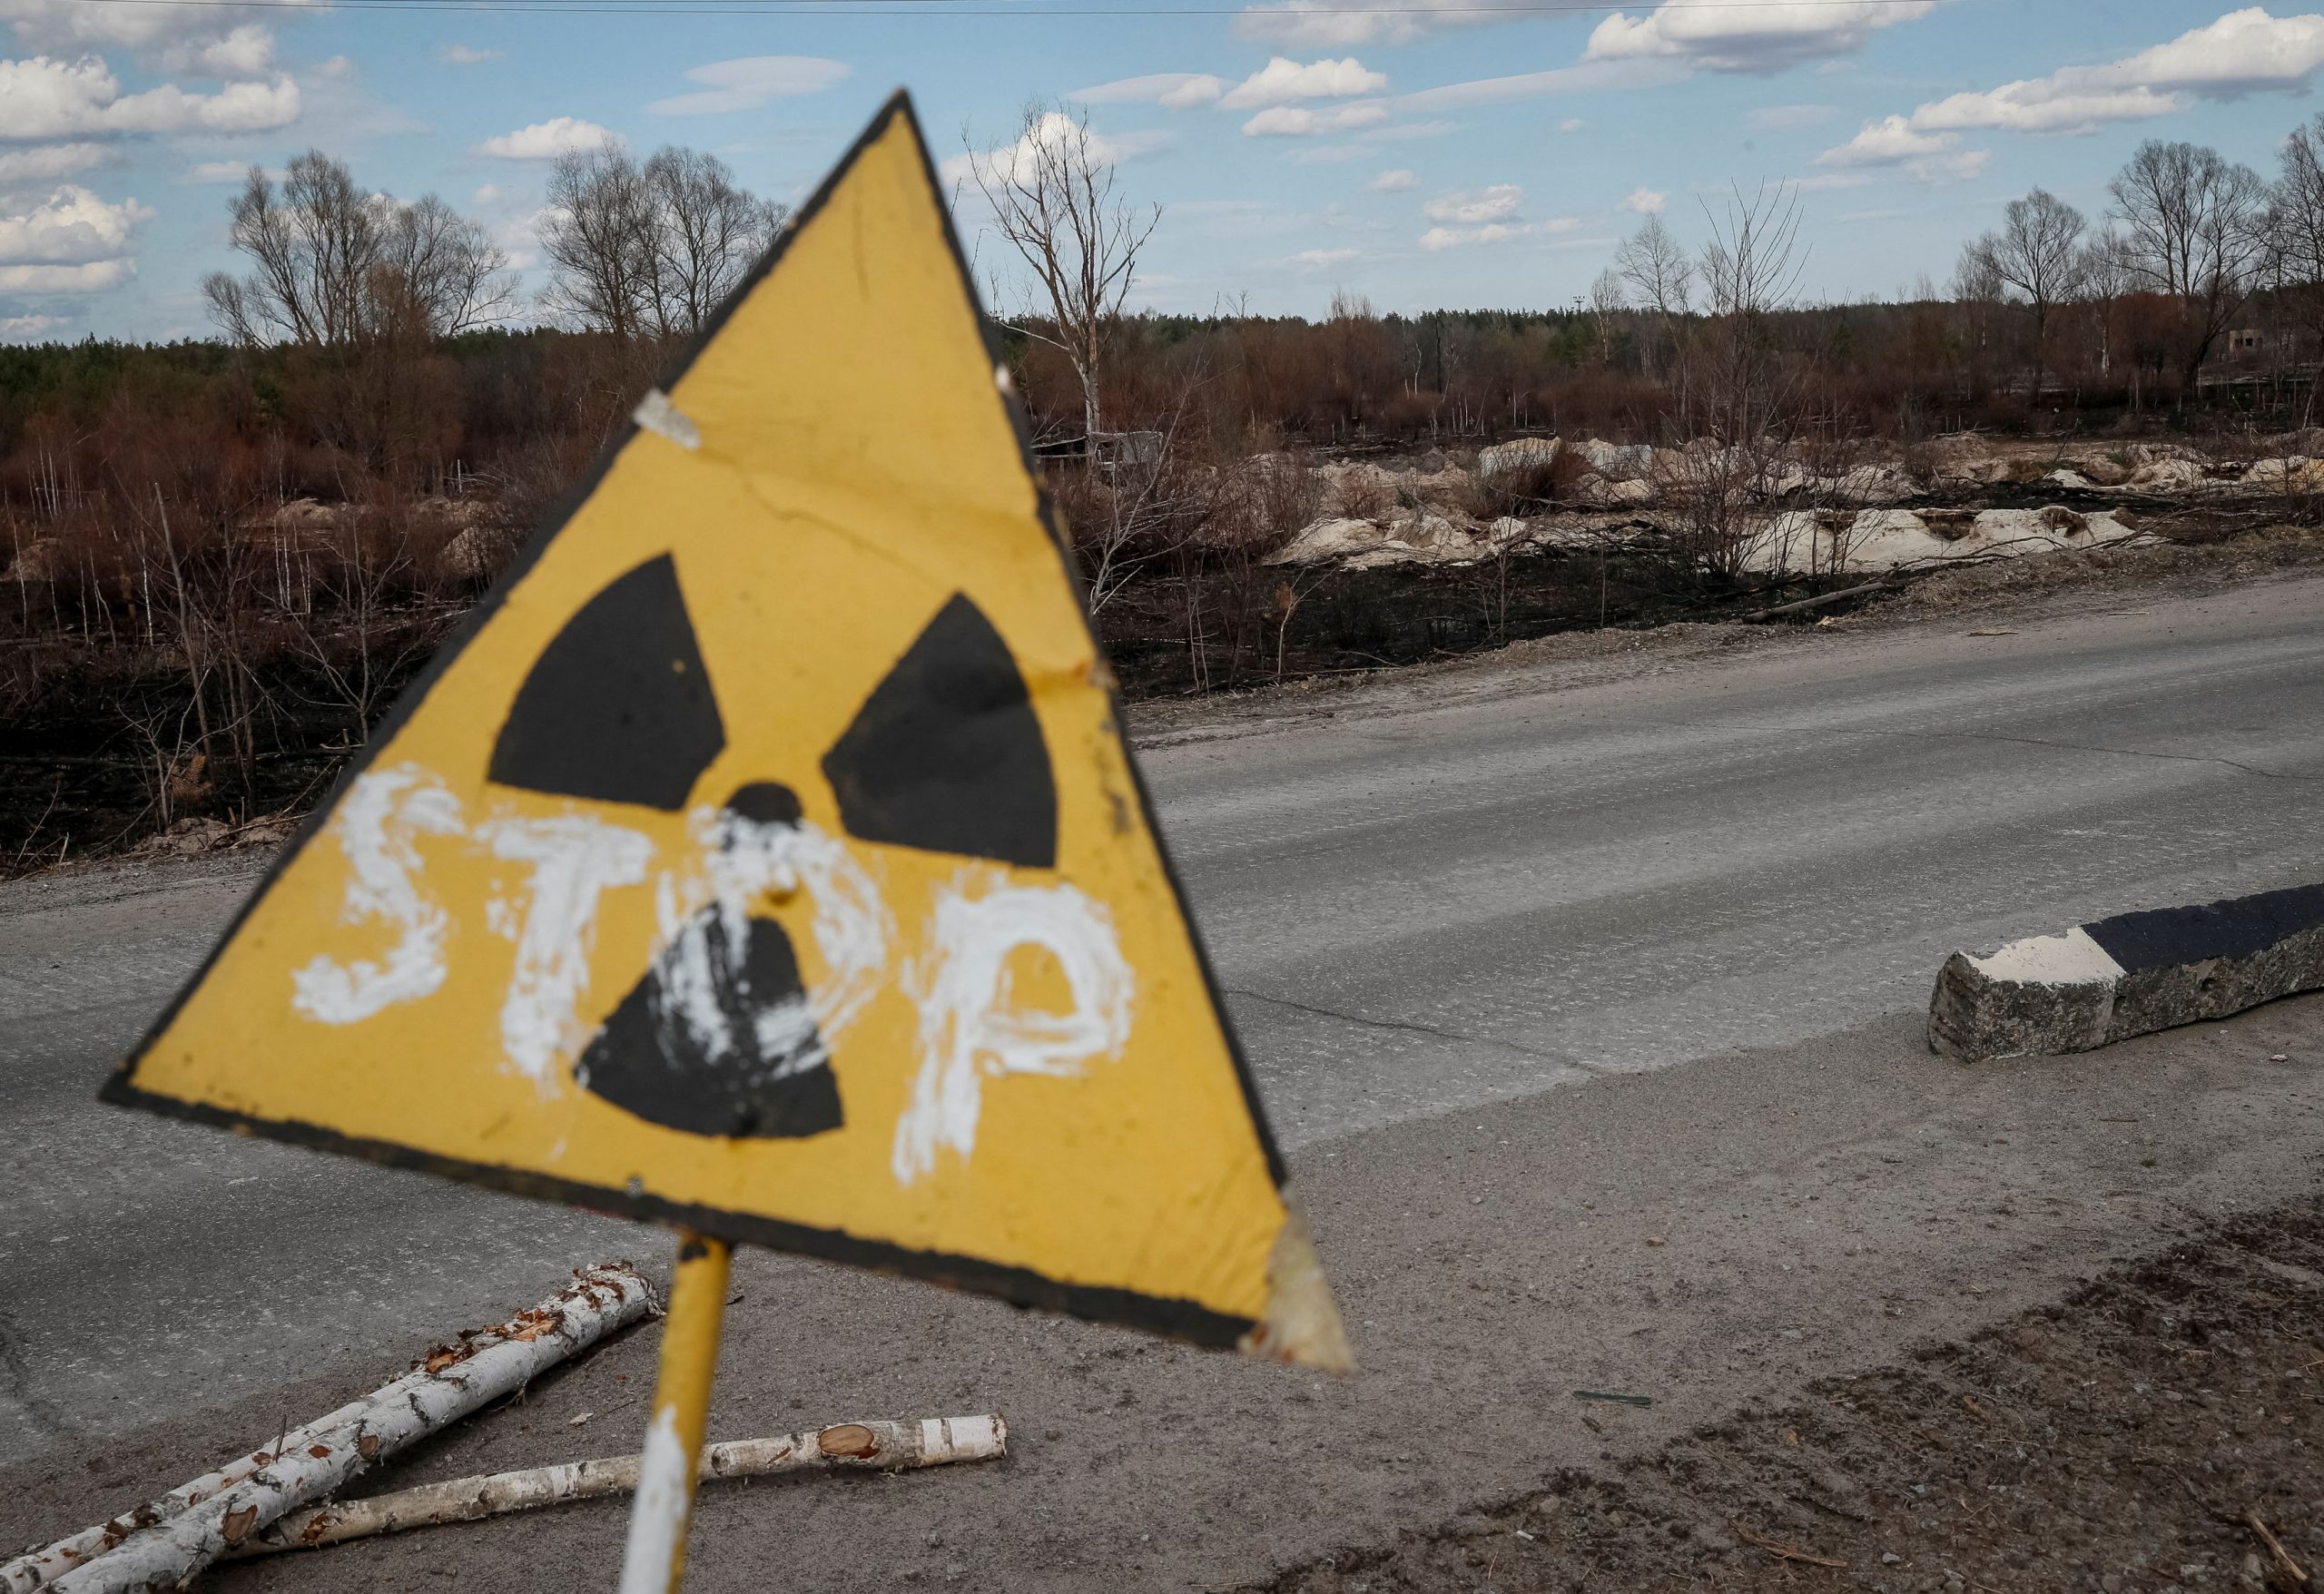 Ρωσία: Νέες αναφορές σε ενδεχόμενη σύρραξη μεταξύ πυρηνικών δυνάμεων και έκκληση για αποτροπή της